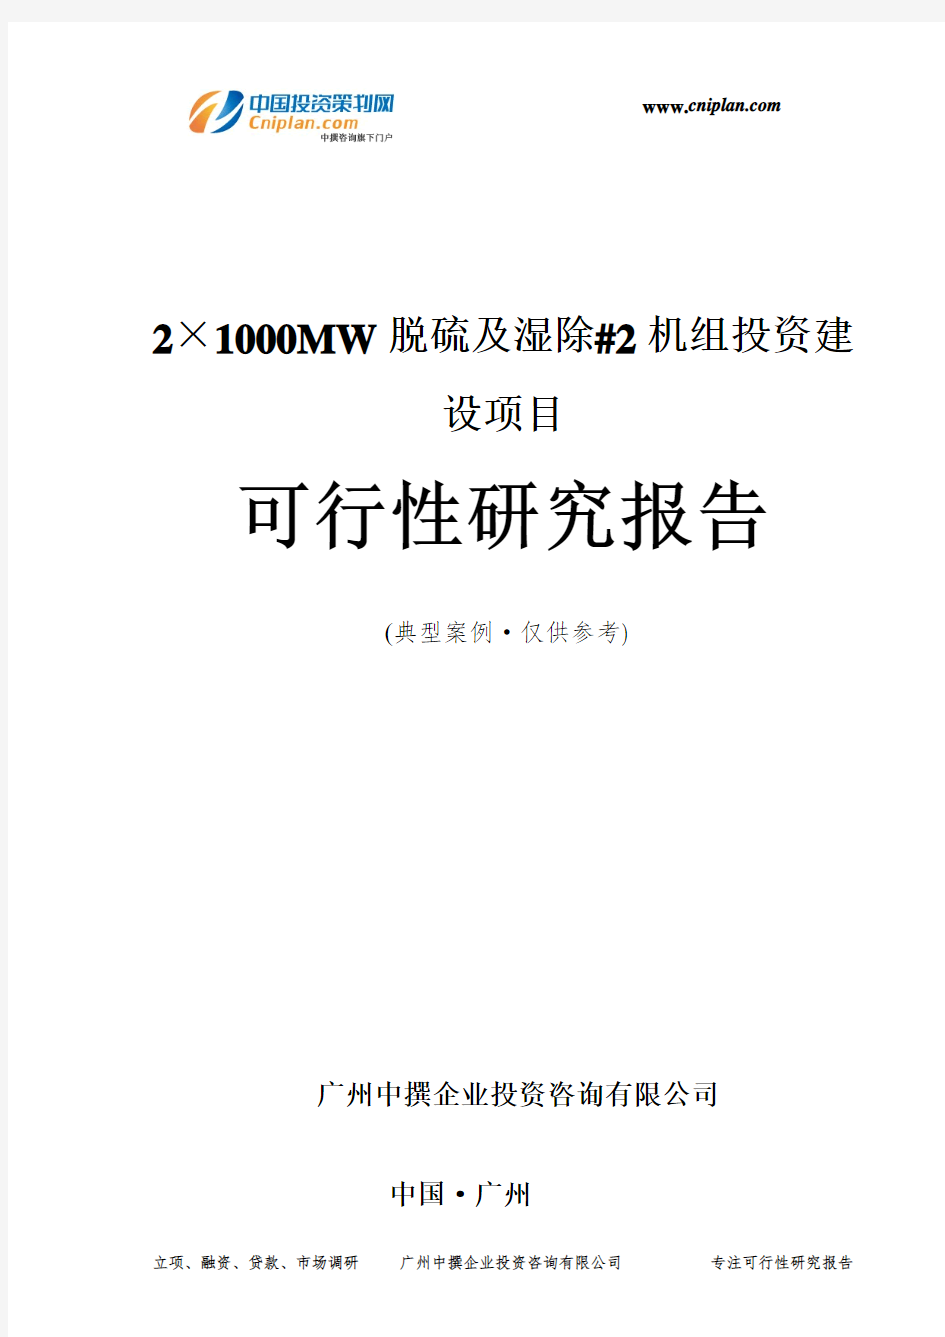 2×1000MW脱硫及湿除#2机组投资建设项目可行性研究报告-广州中撰咨询